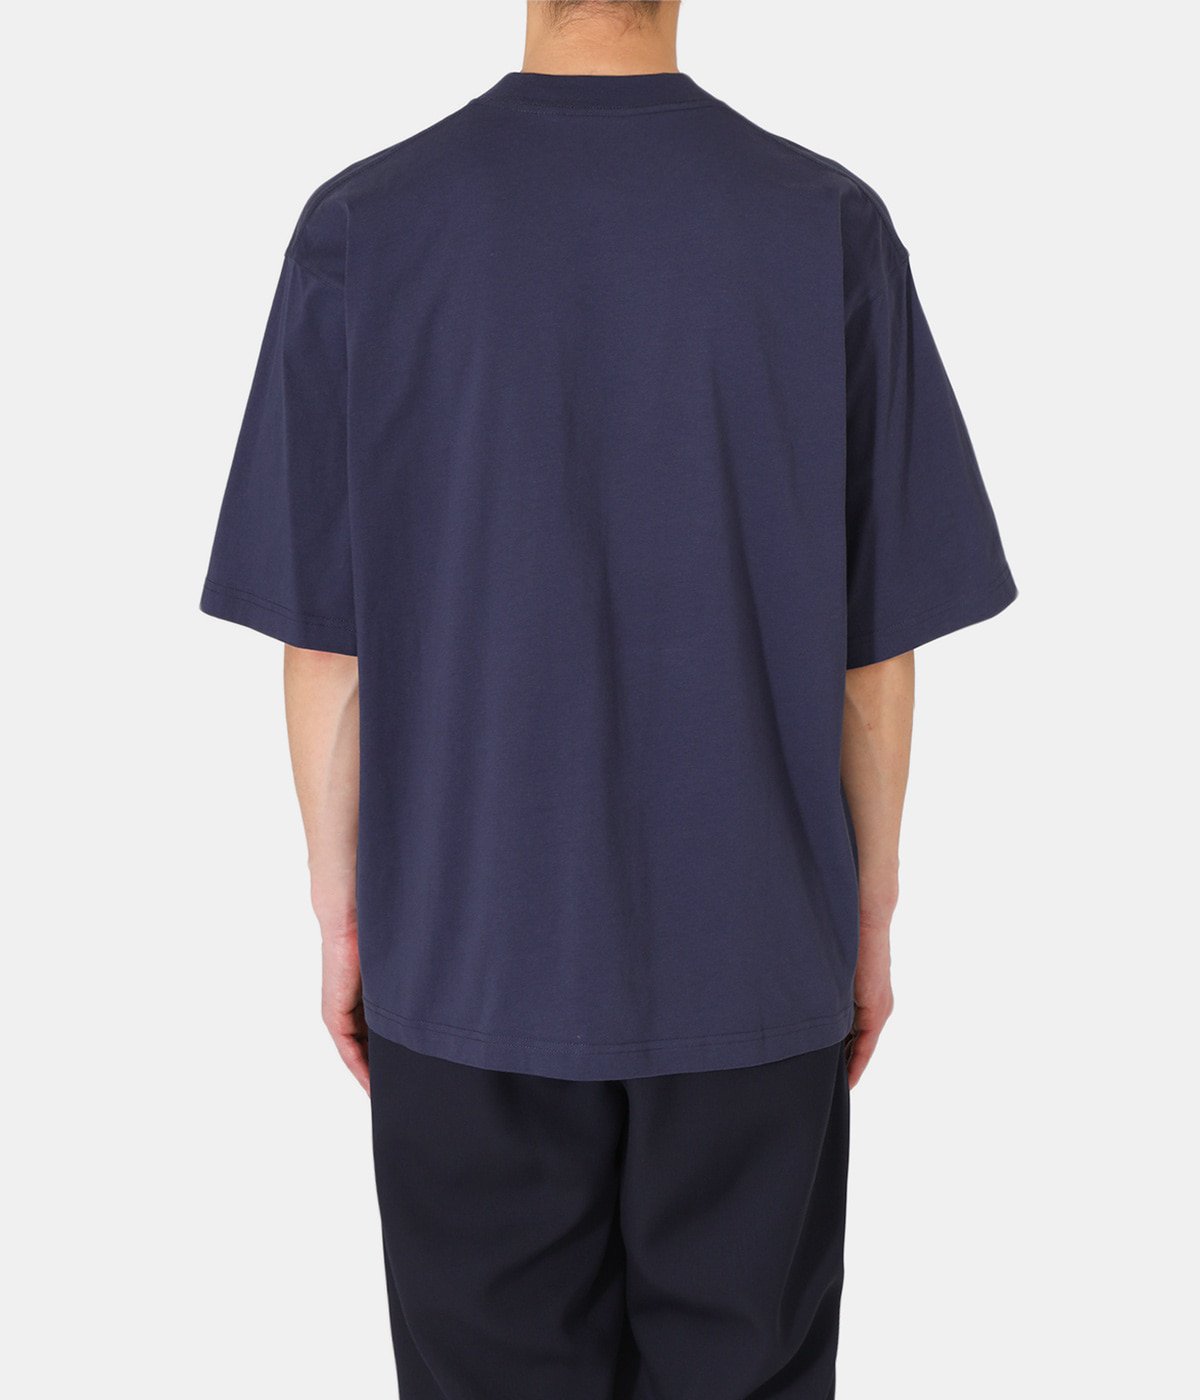 LOGO T-SHIRT | MARNI(マルニ) / トップス カットソー半袖・Tシャツ 